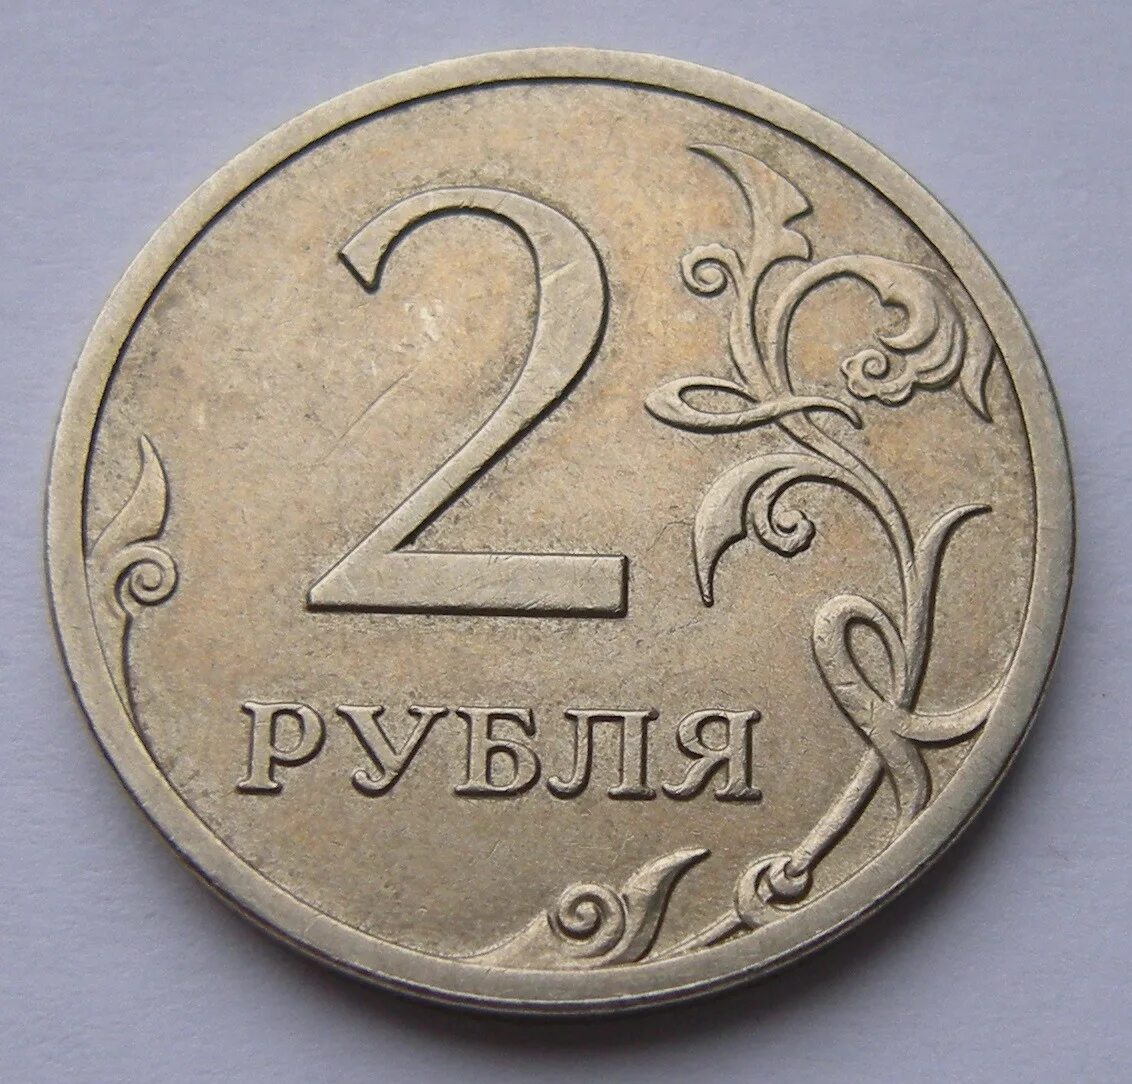 75 рублей 30. Монета 2 рубля. Монеты 1 2 5 рублей. Изображение монет. Монеты 1 руб 2 руб.